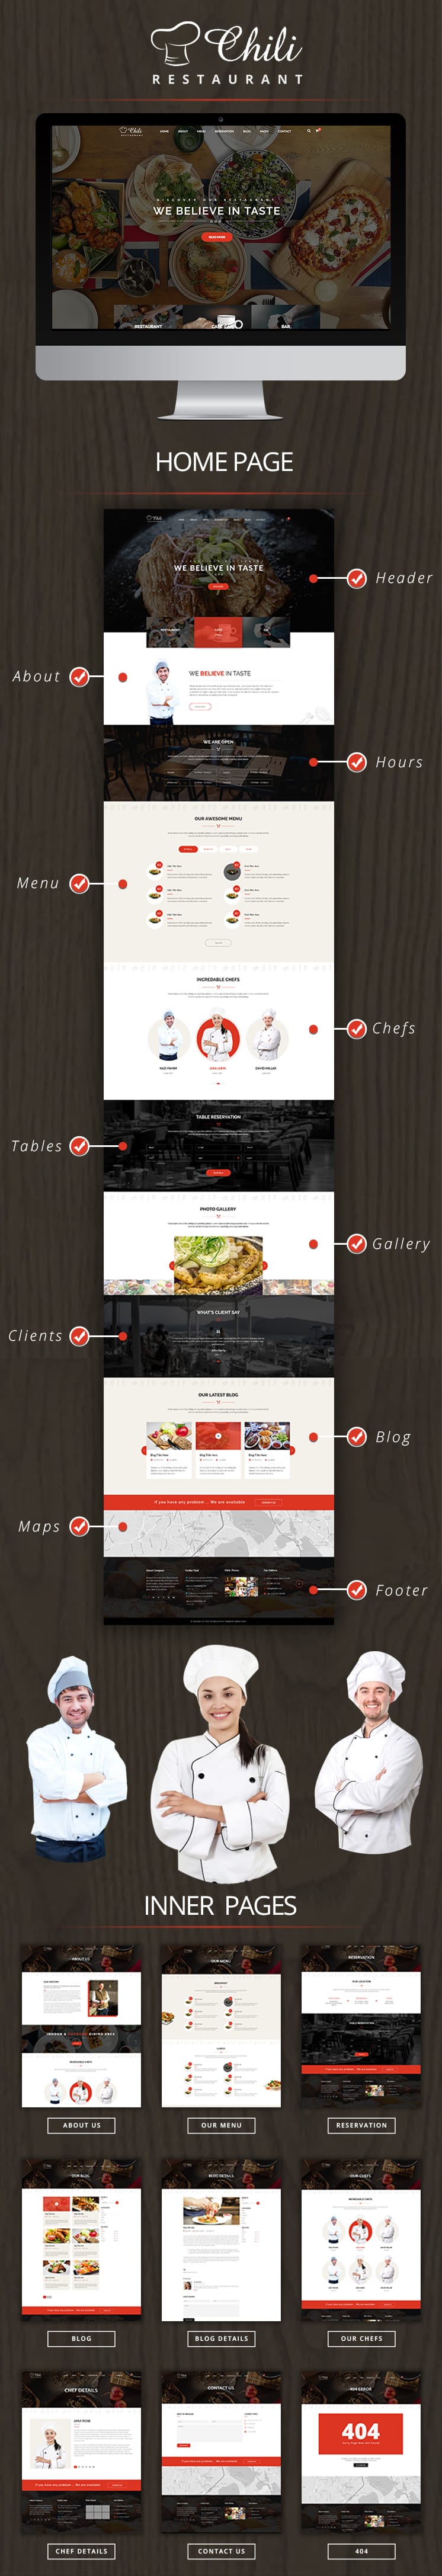 Chili - Multi-Purpose Restaurant WordPress Theme - 1